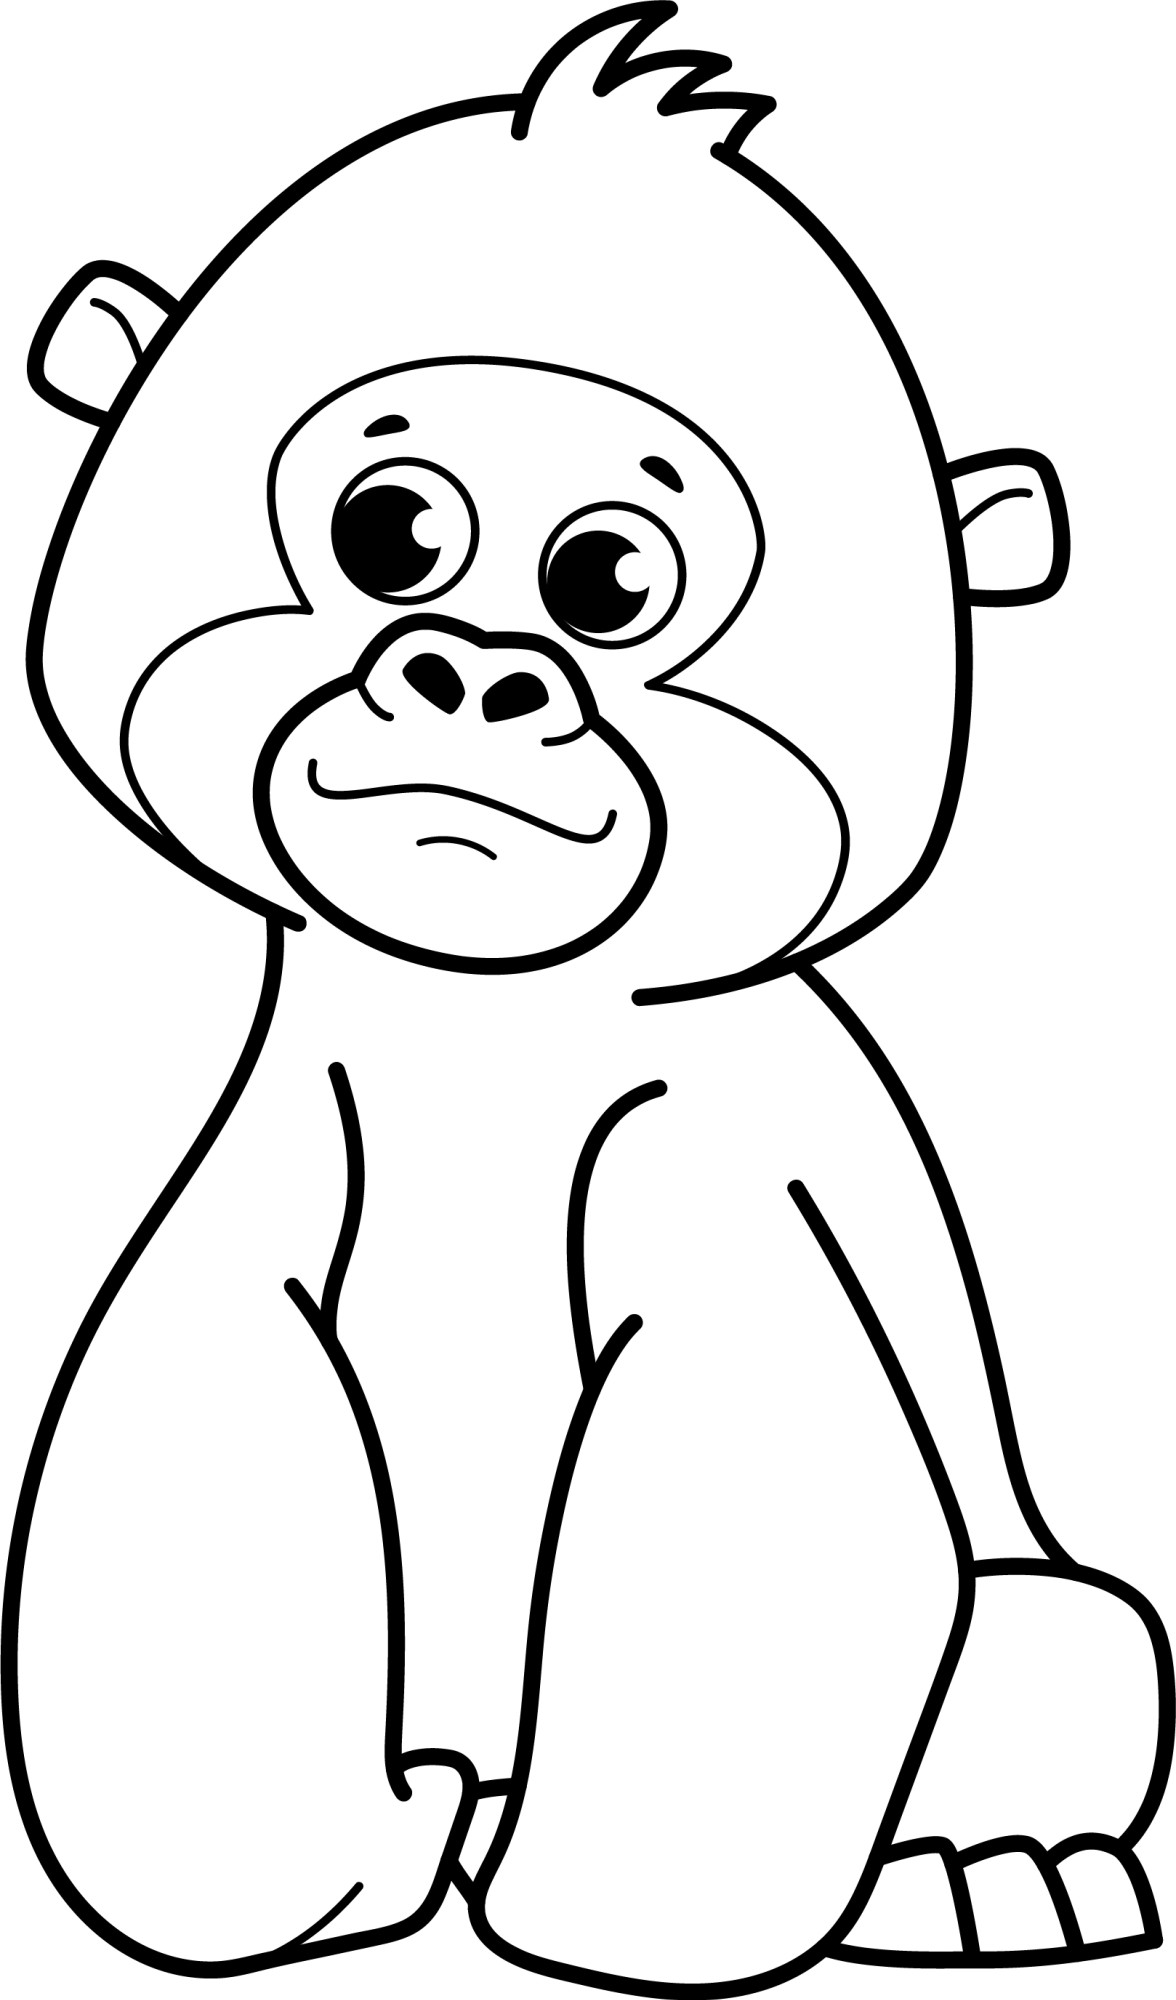 Раскраска для детей: картинка особи гориллы